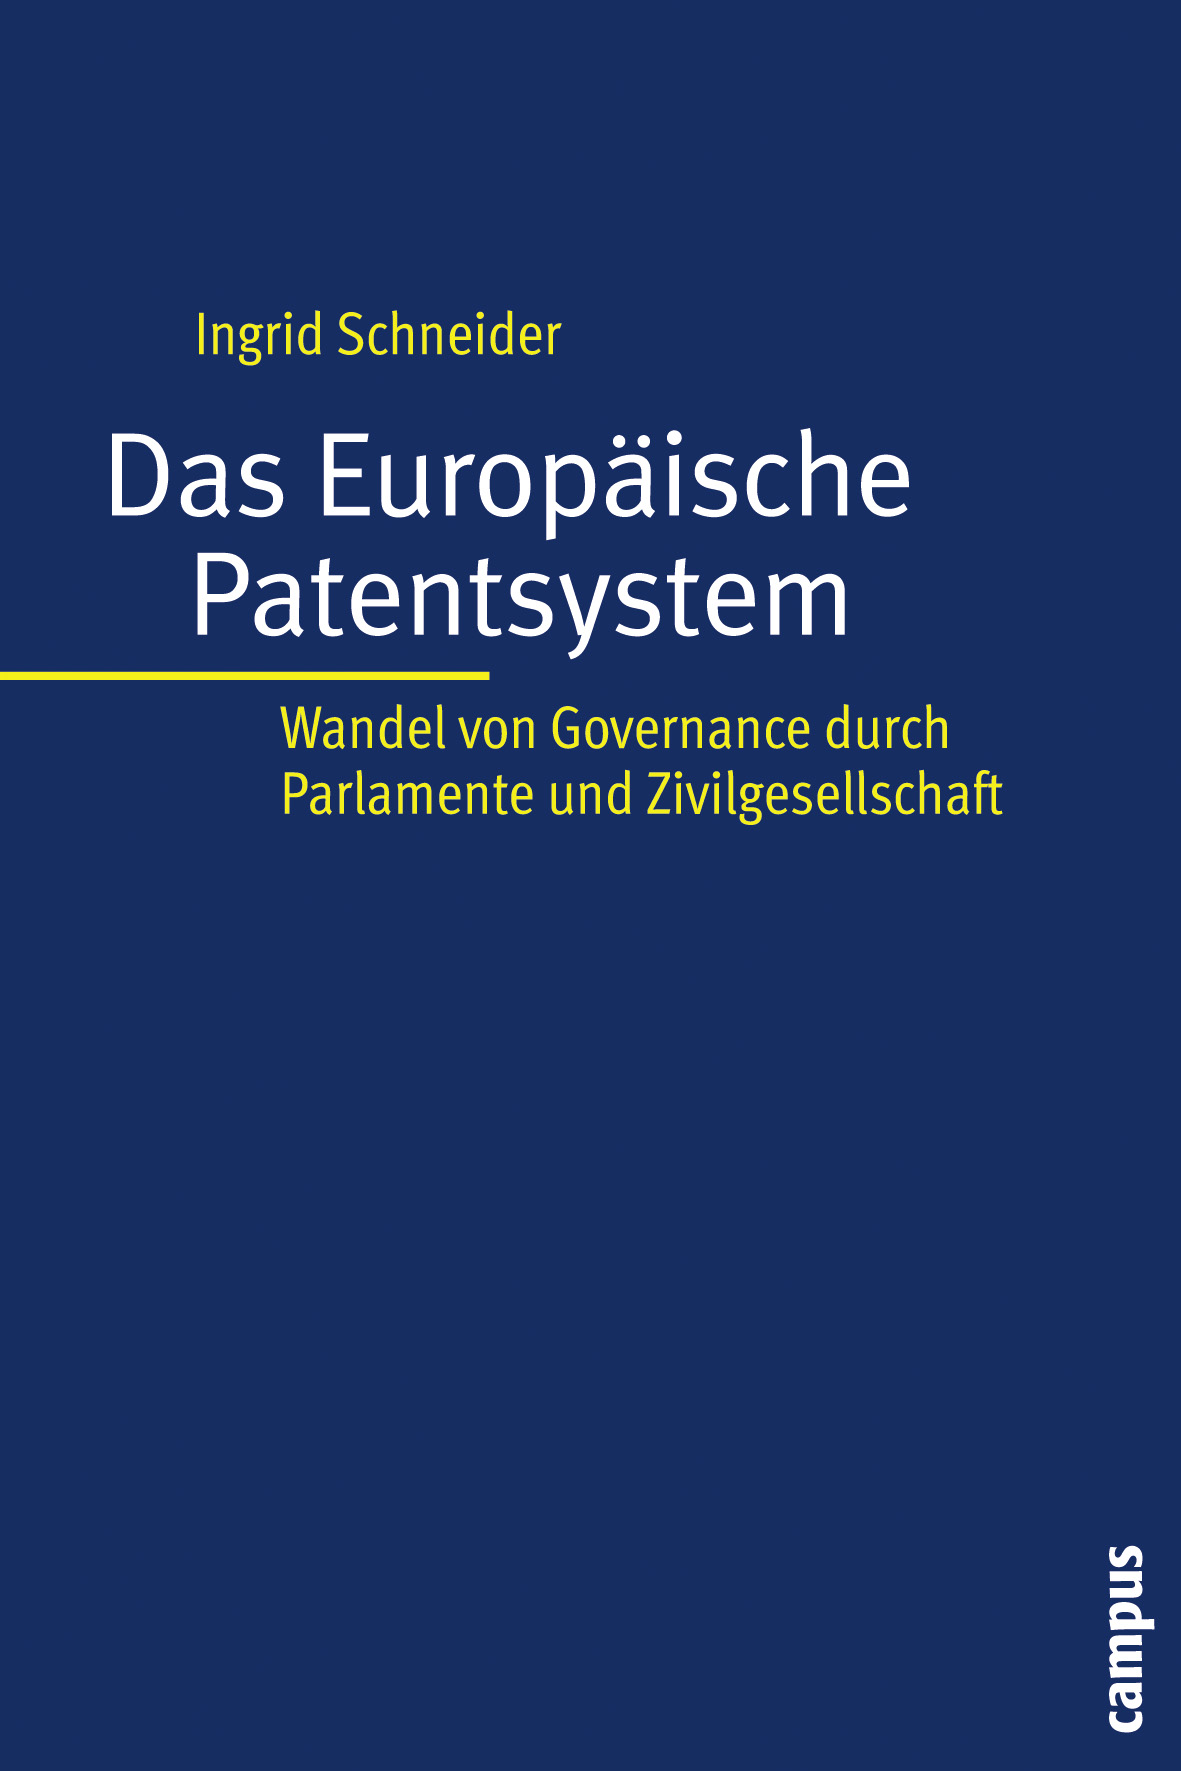 Das Europäische Patentsystem